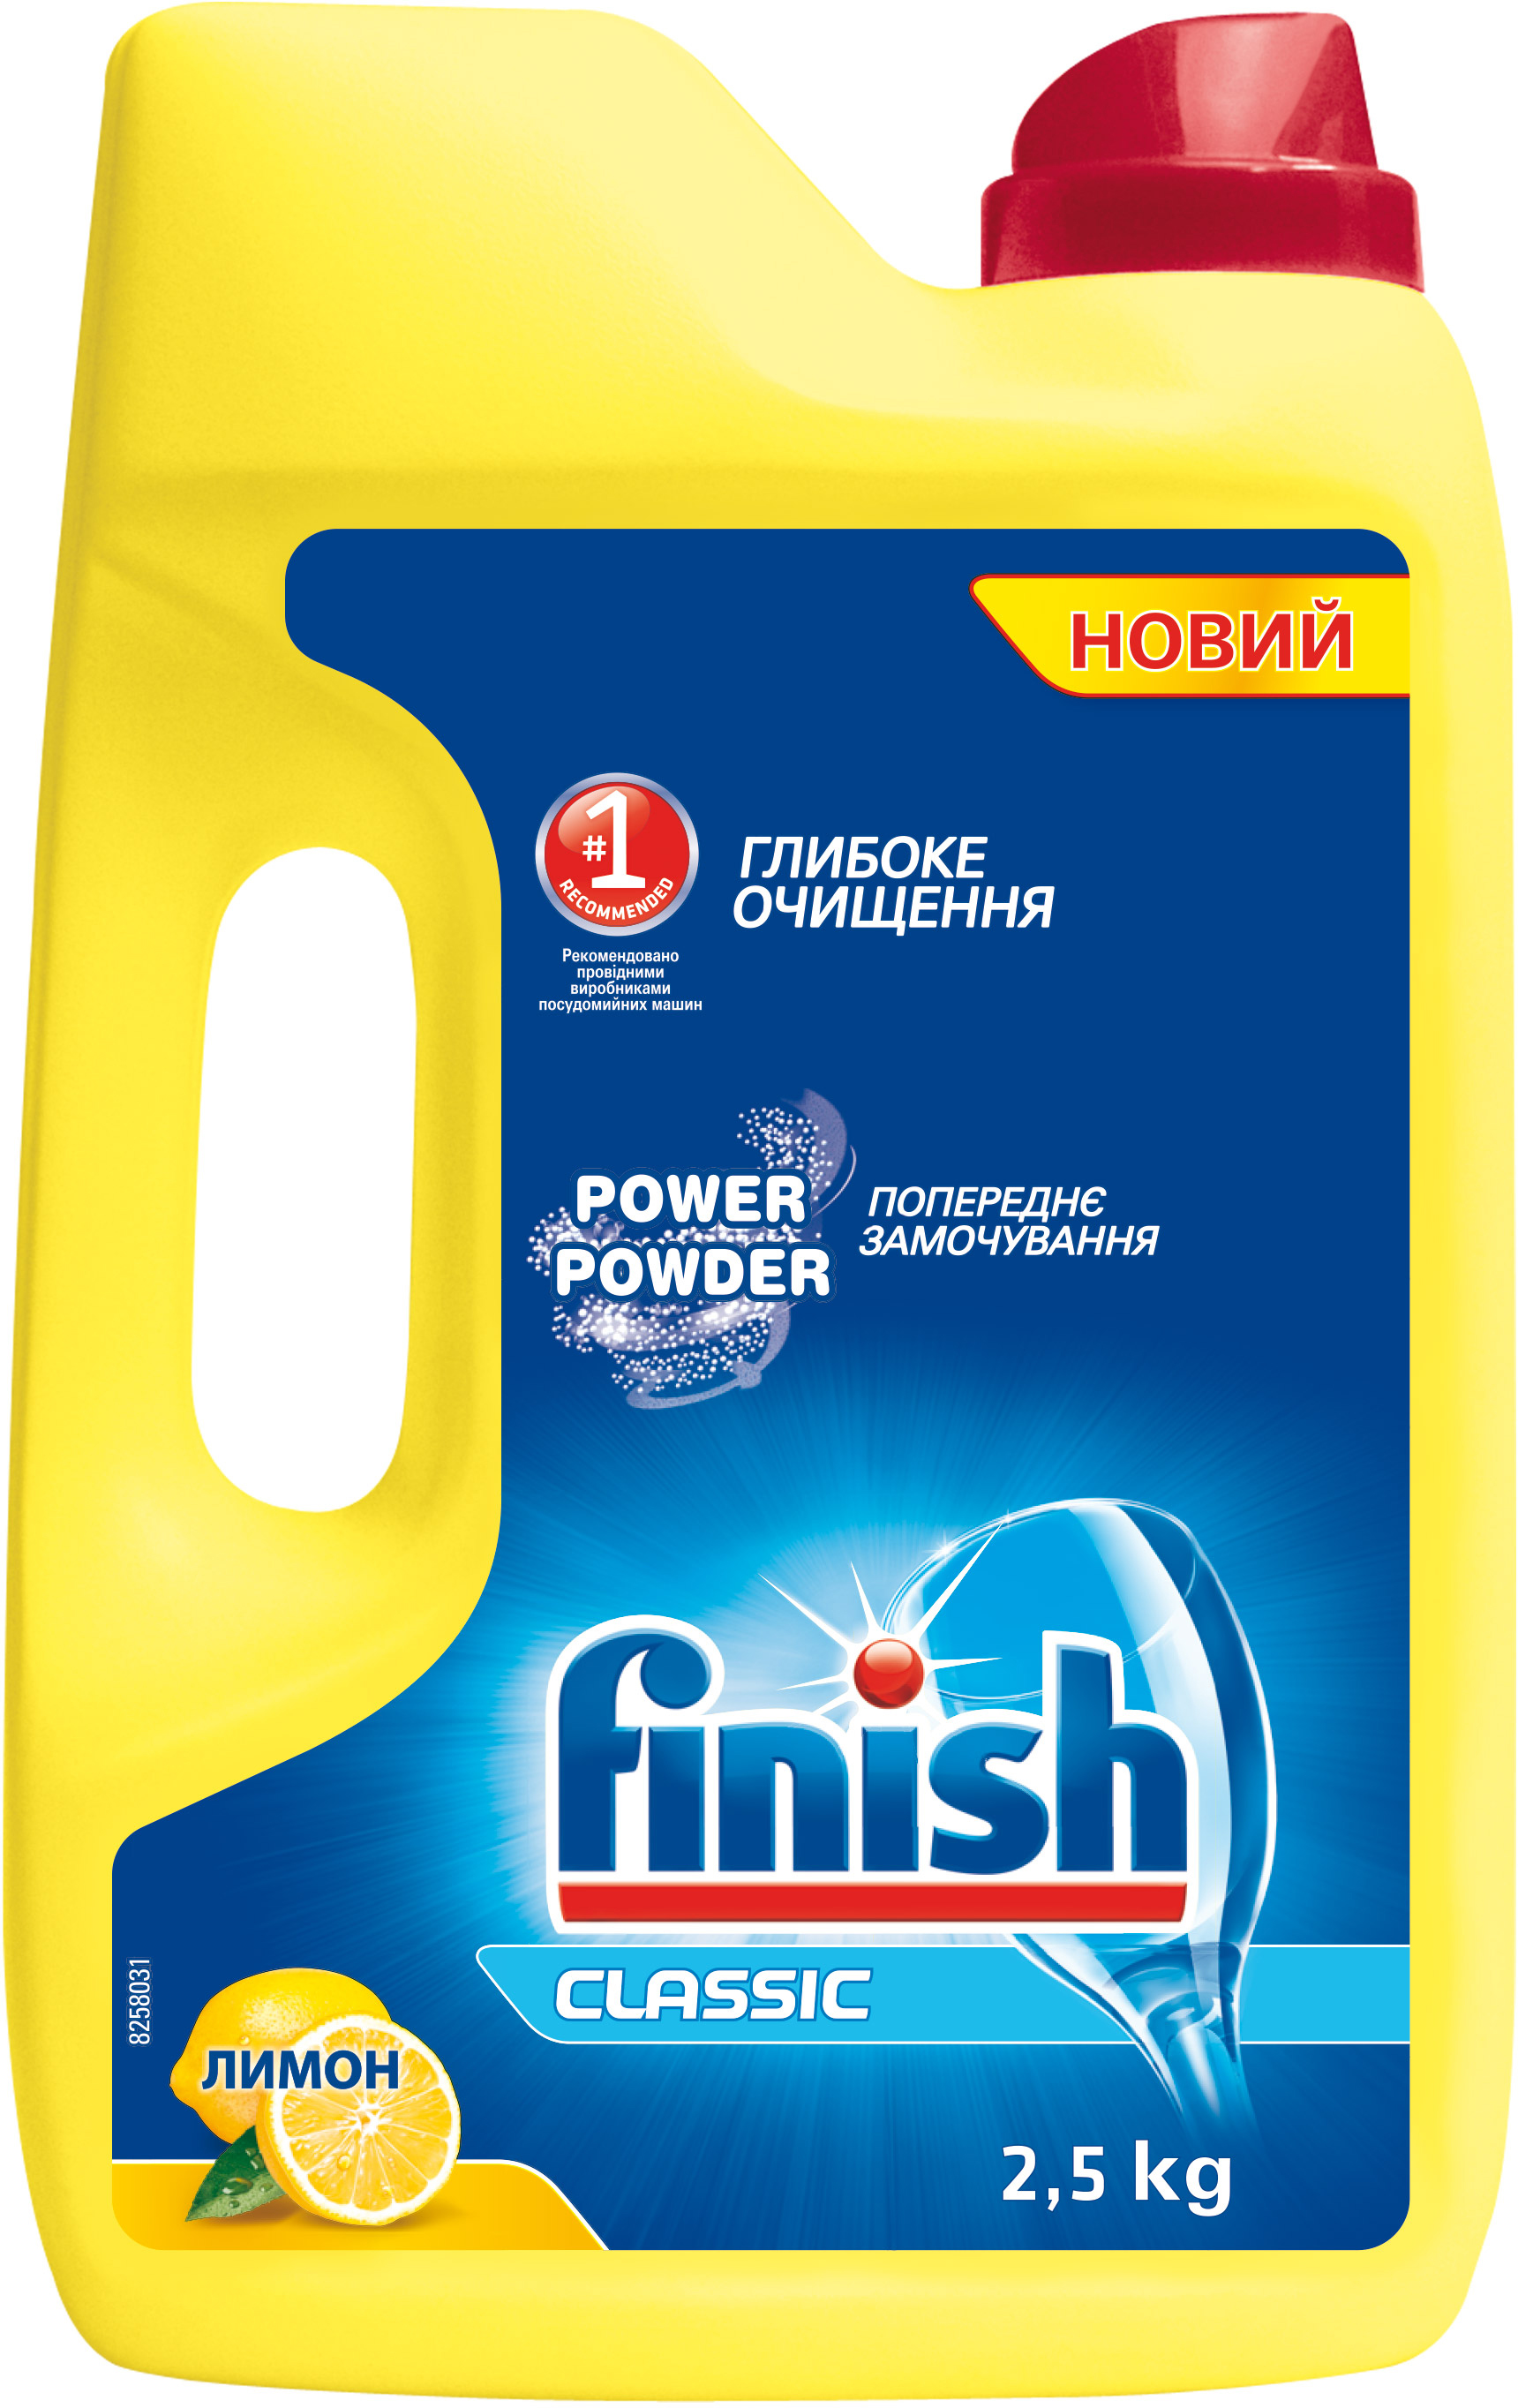 Порошок для мытья посуды в посудомоечной машине FINISH Лимон 2.5 кг .